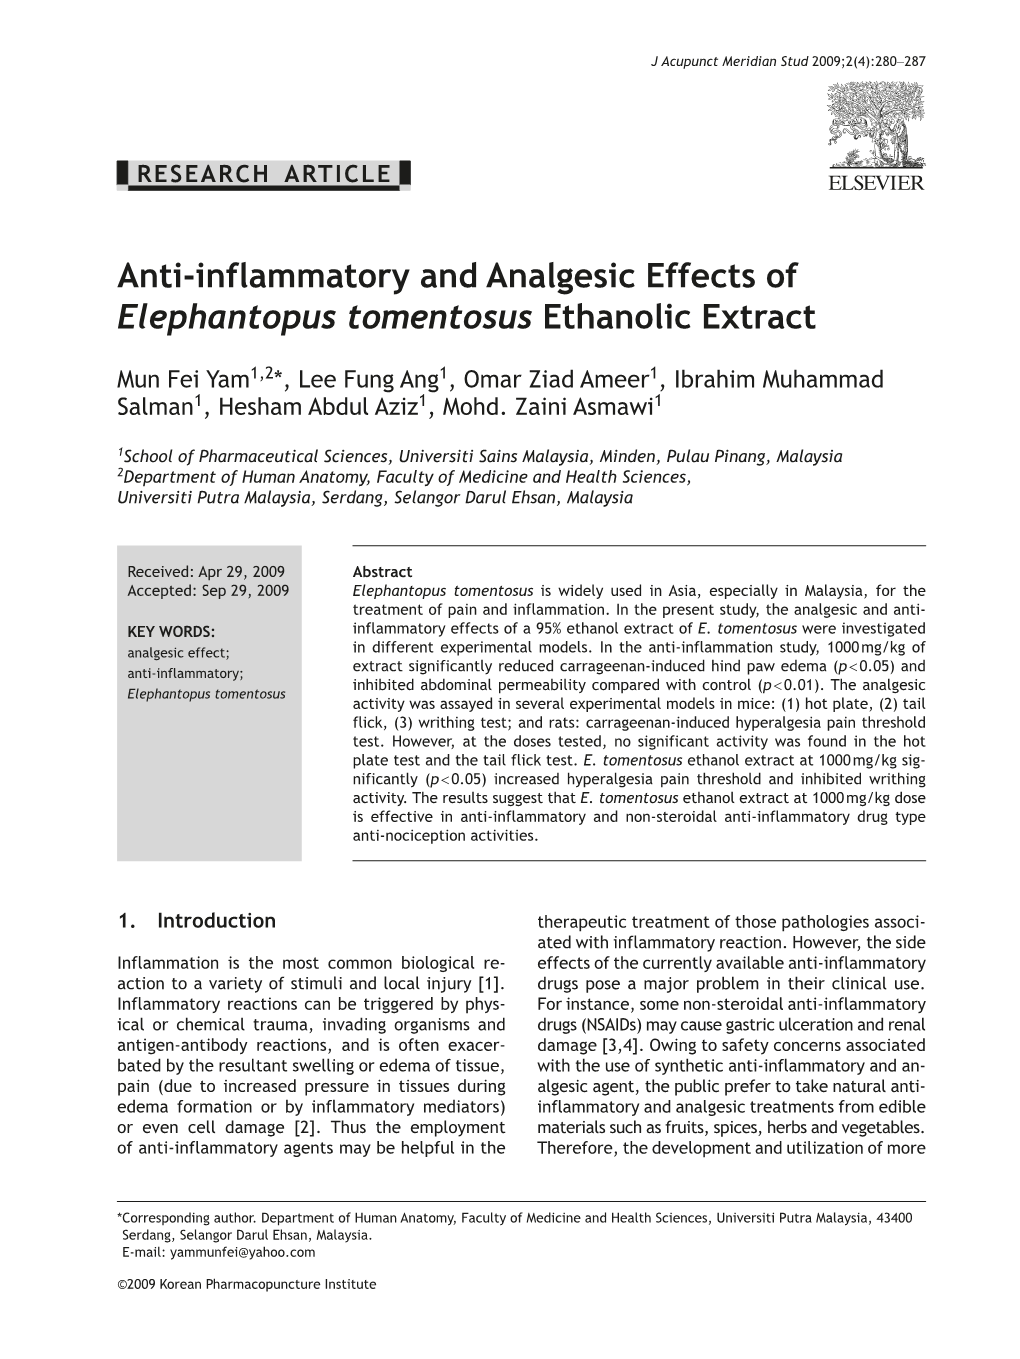 Anti-Inflammatory and Analgesic Effects of Elephantopus Tomentosus Ethanolic Extract